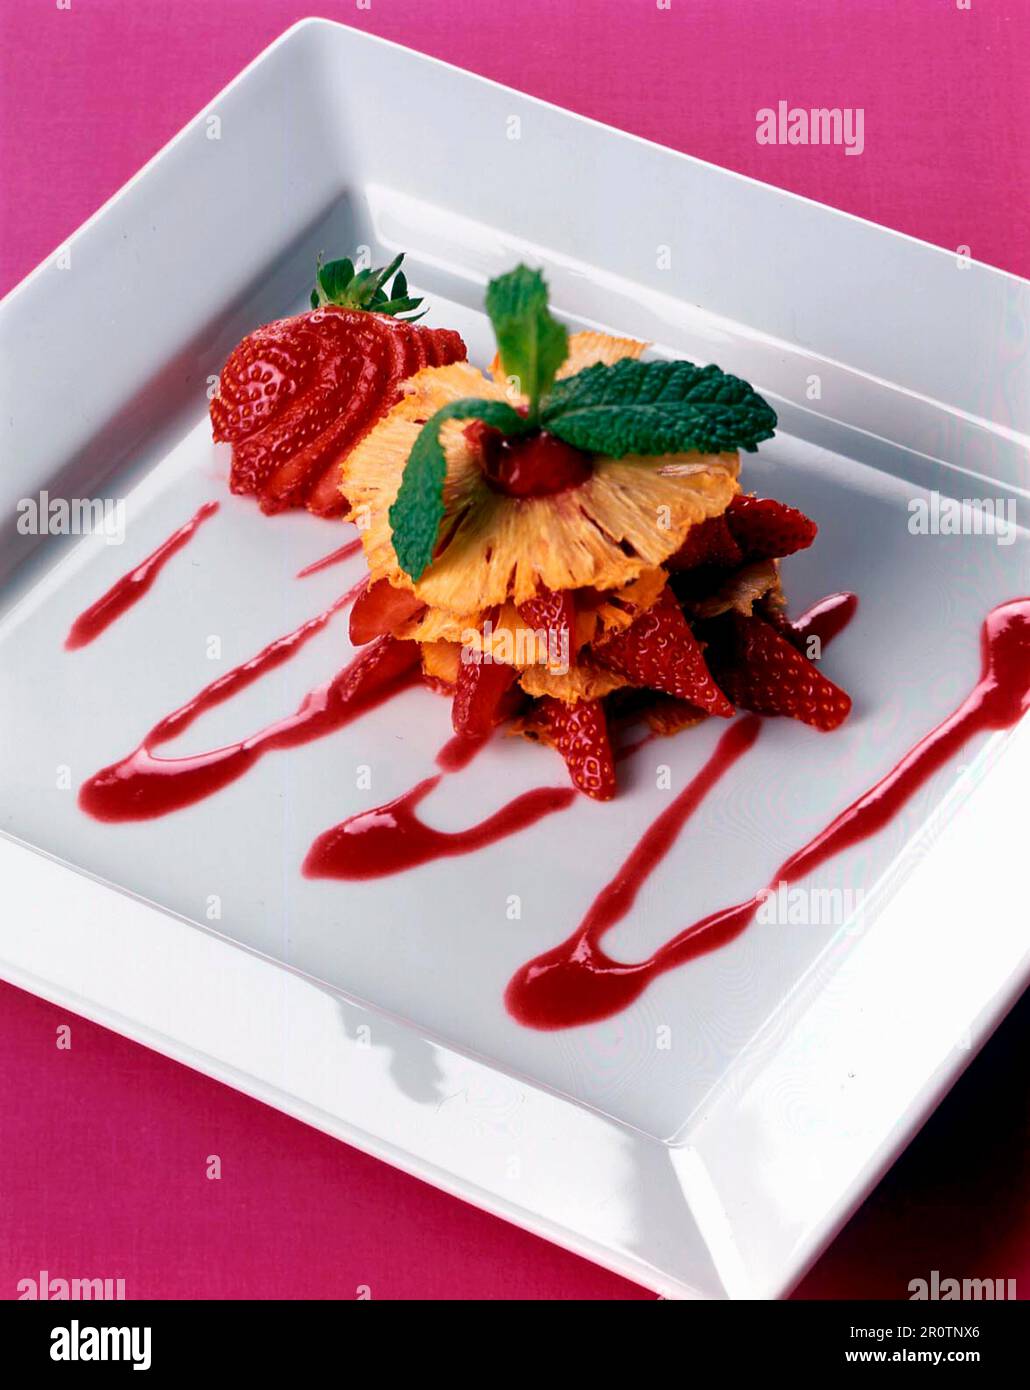 Ananas féuillantine avec purée de fraises Banque D'Images